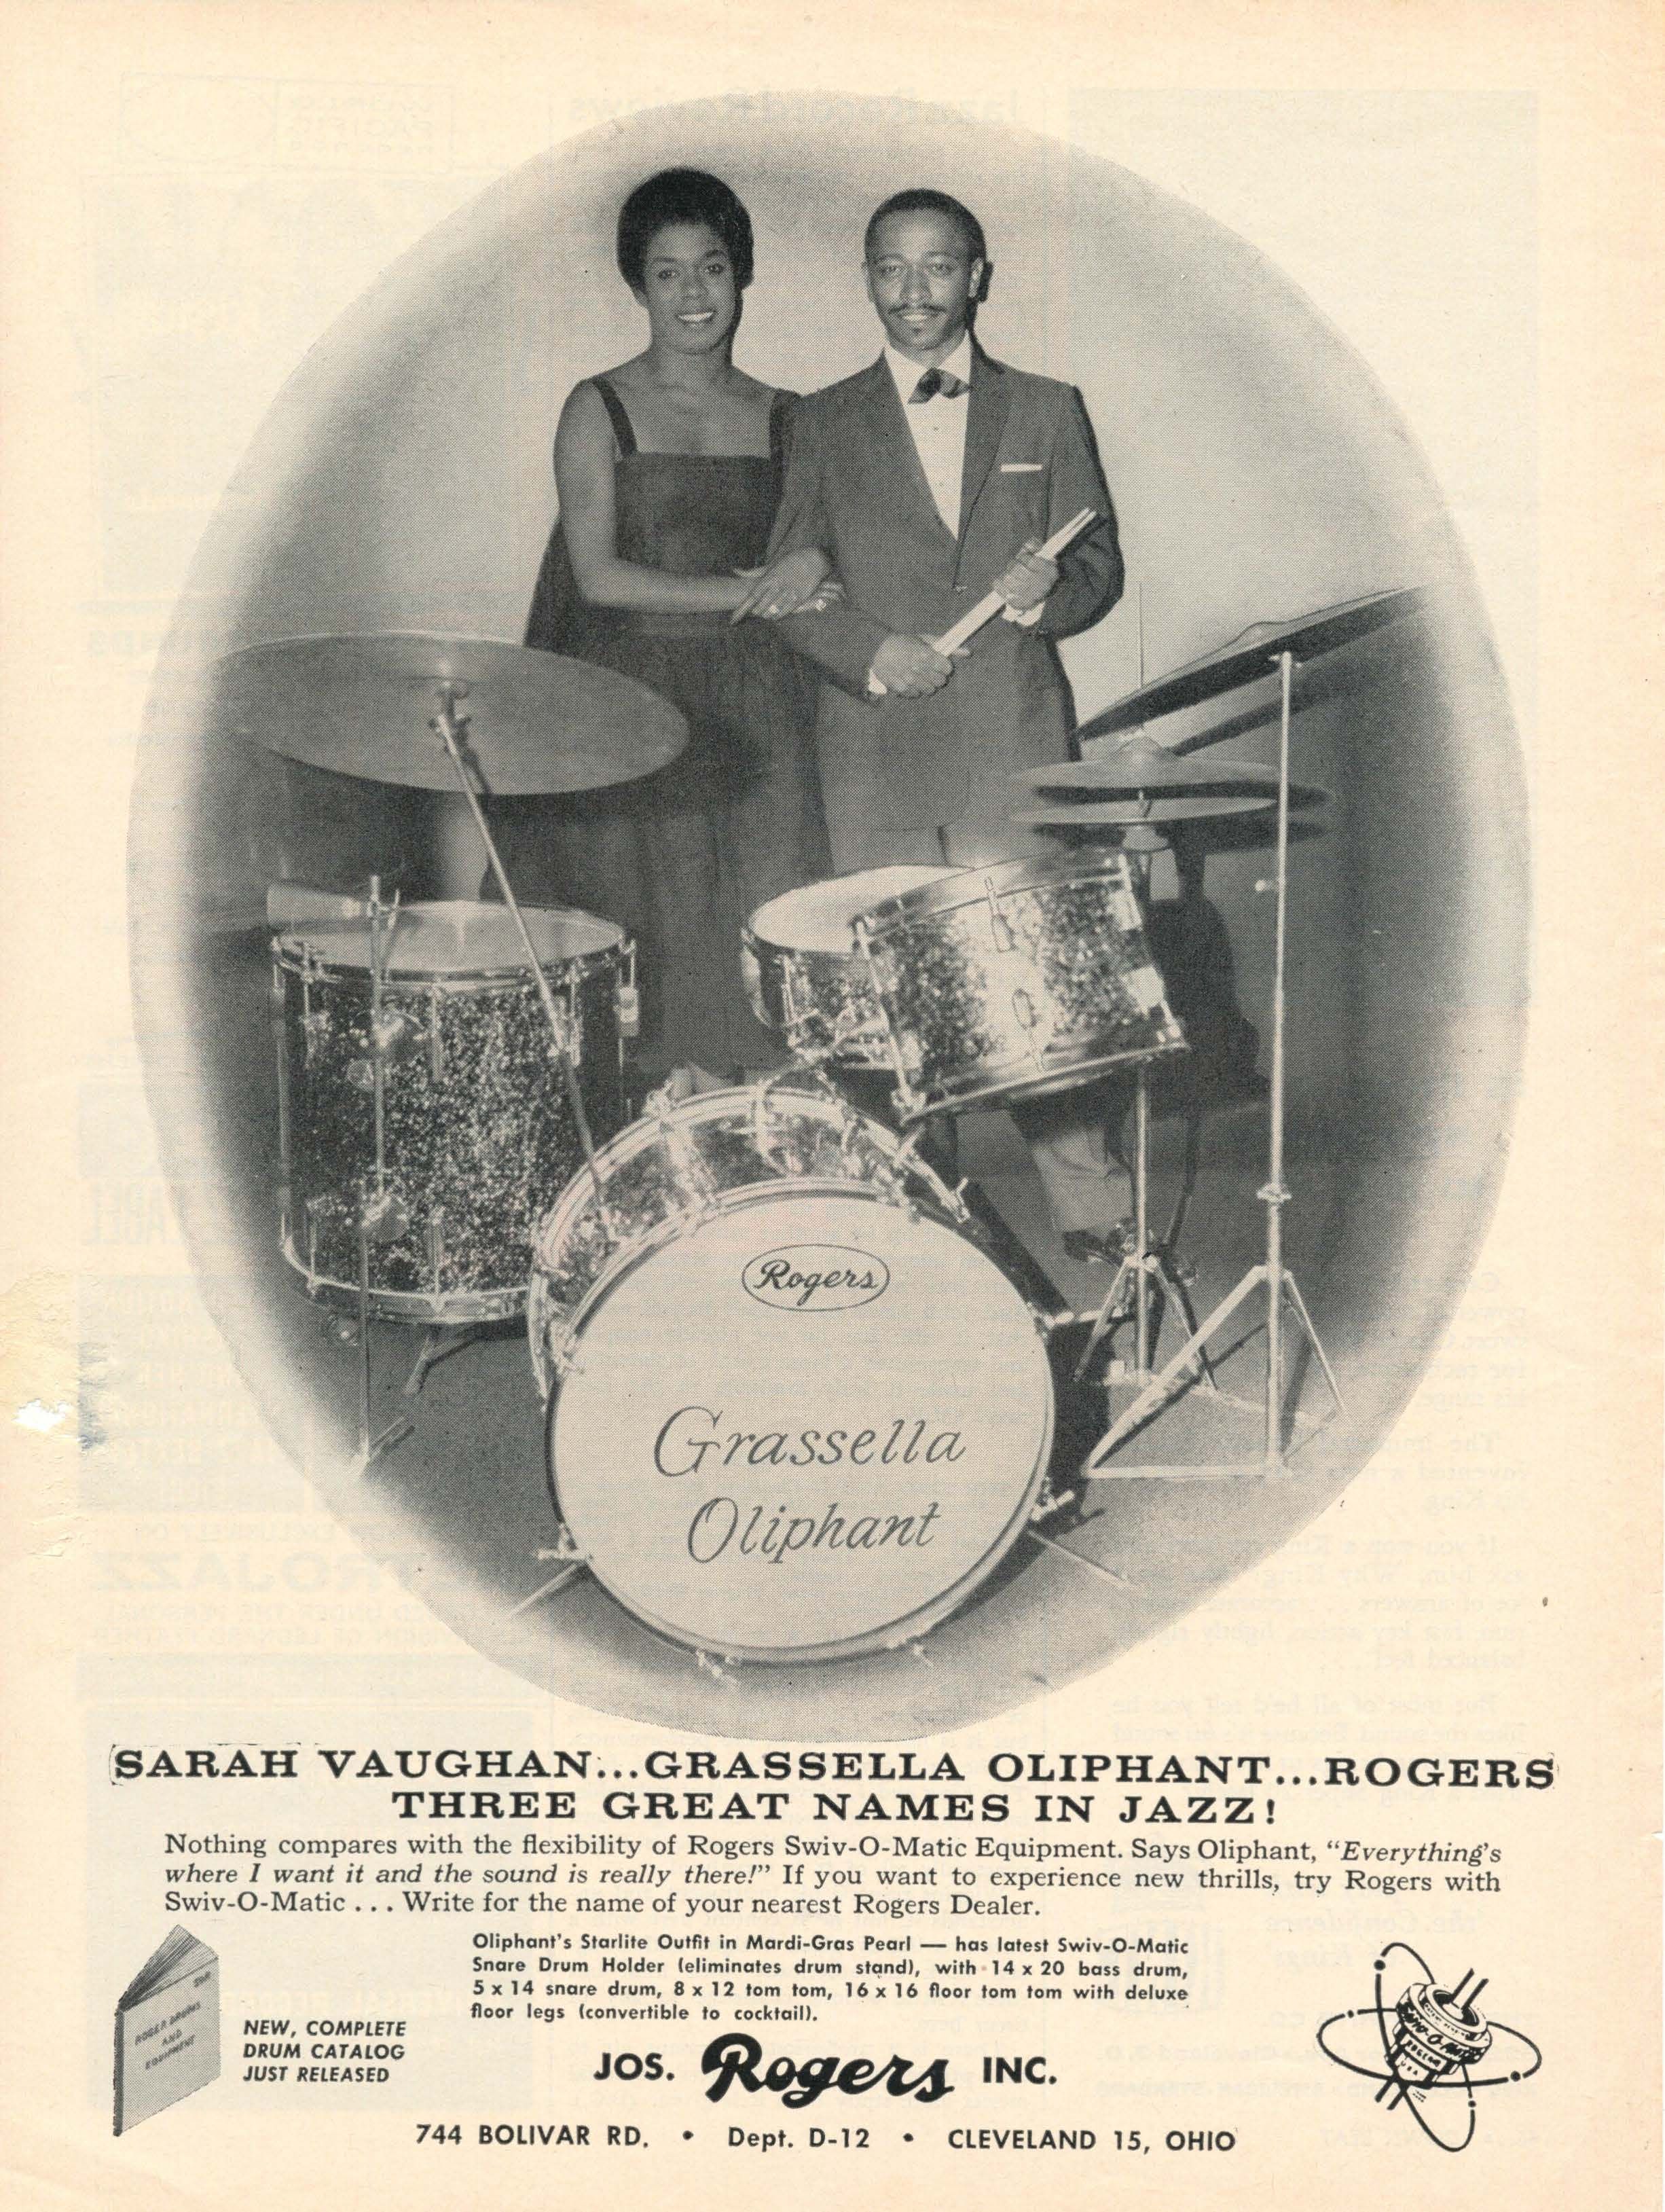 Grassella Oliphant & Sarah Vaughan